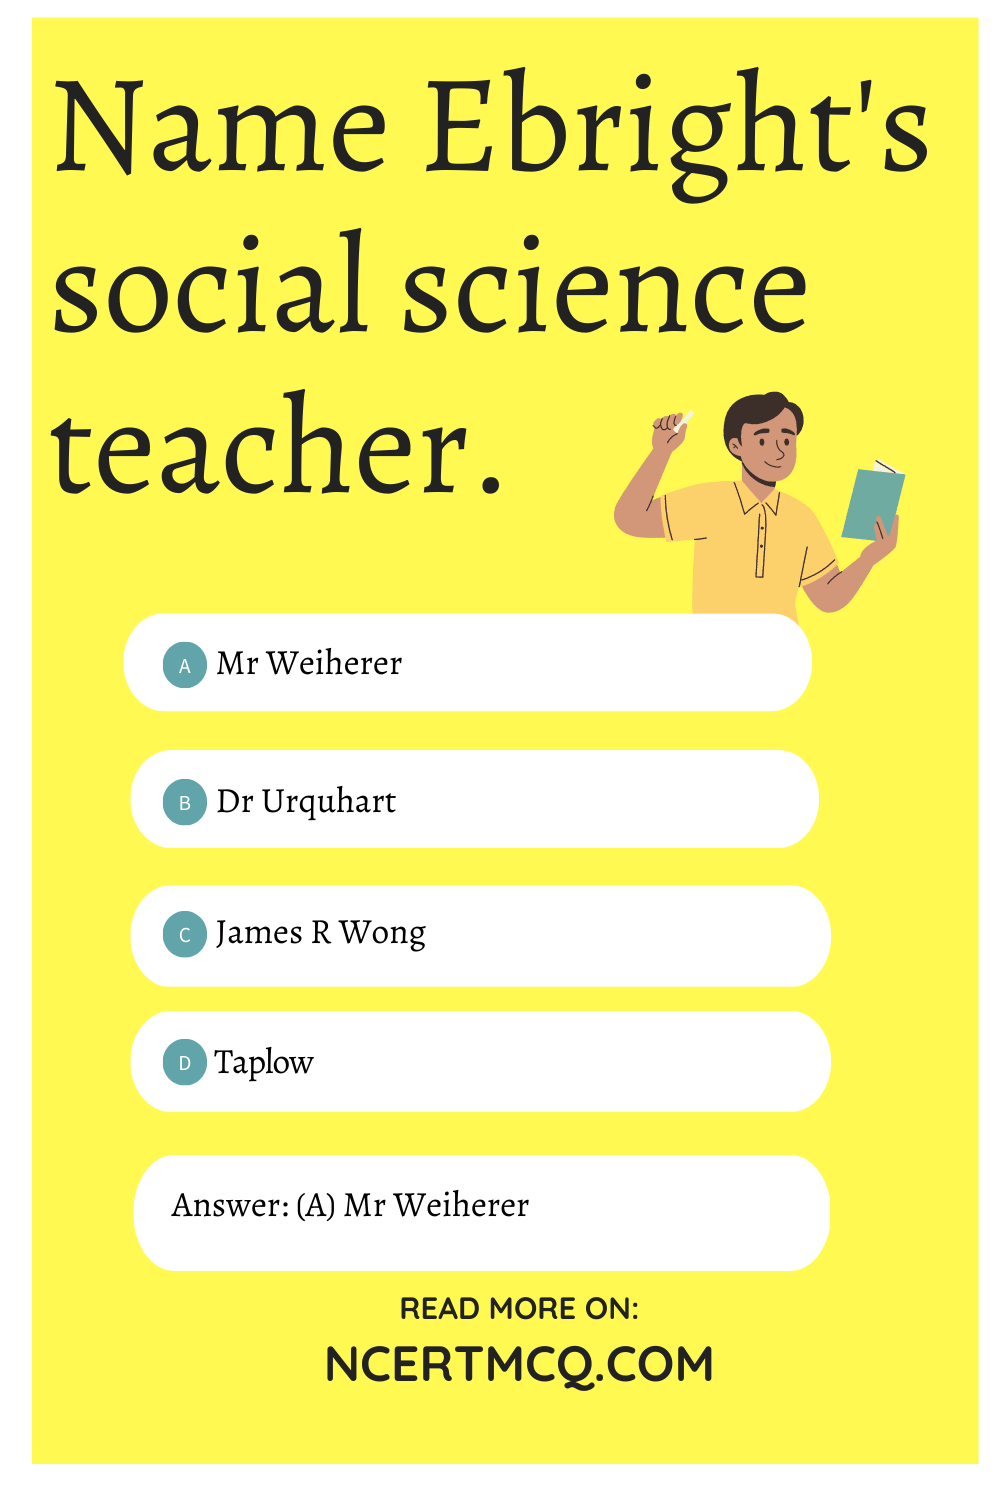 Name Ebright's social science teacher.